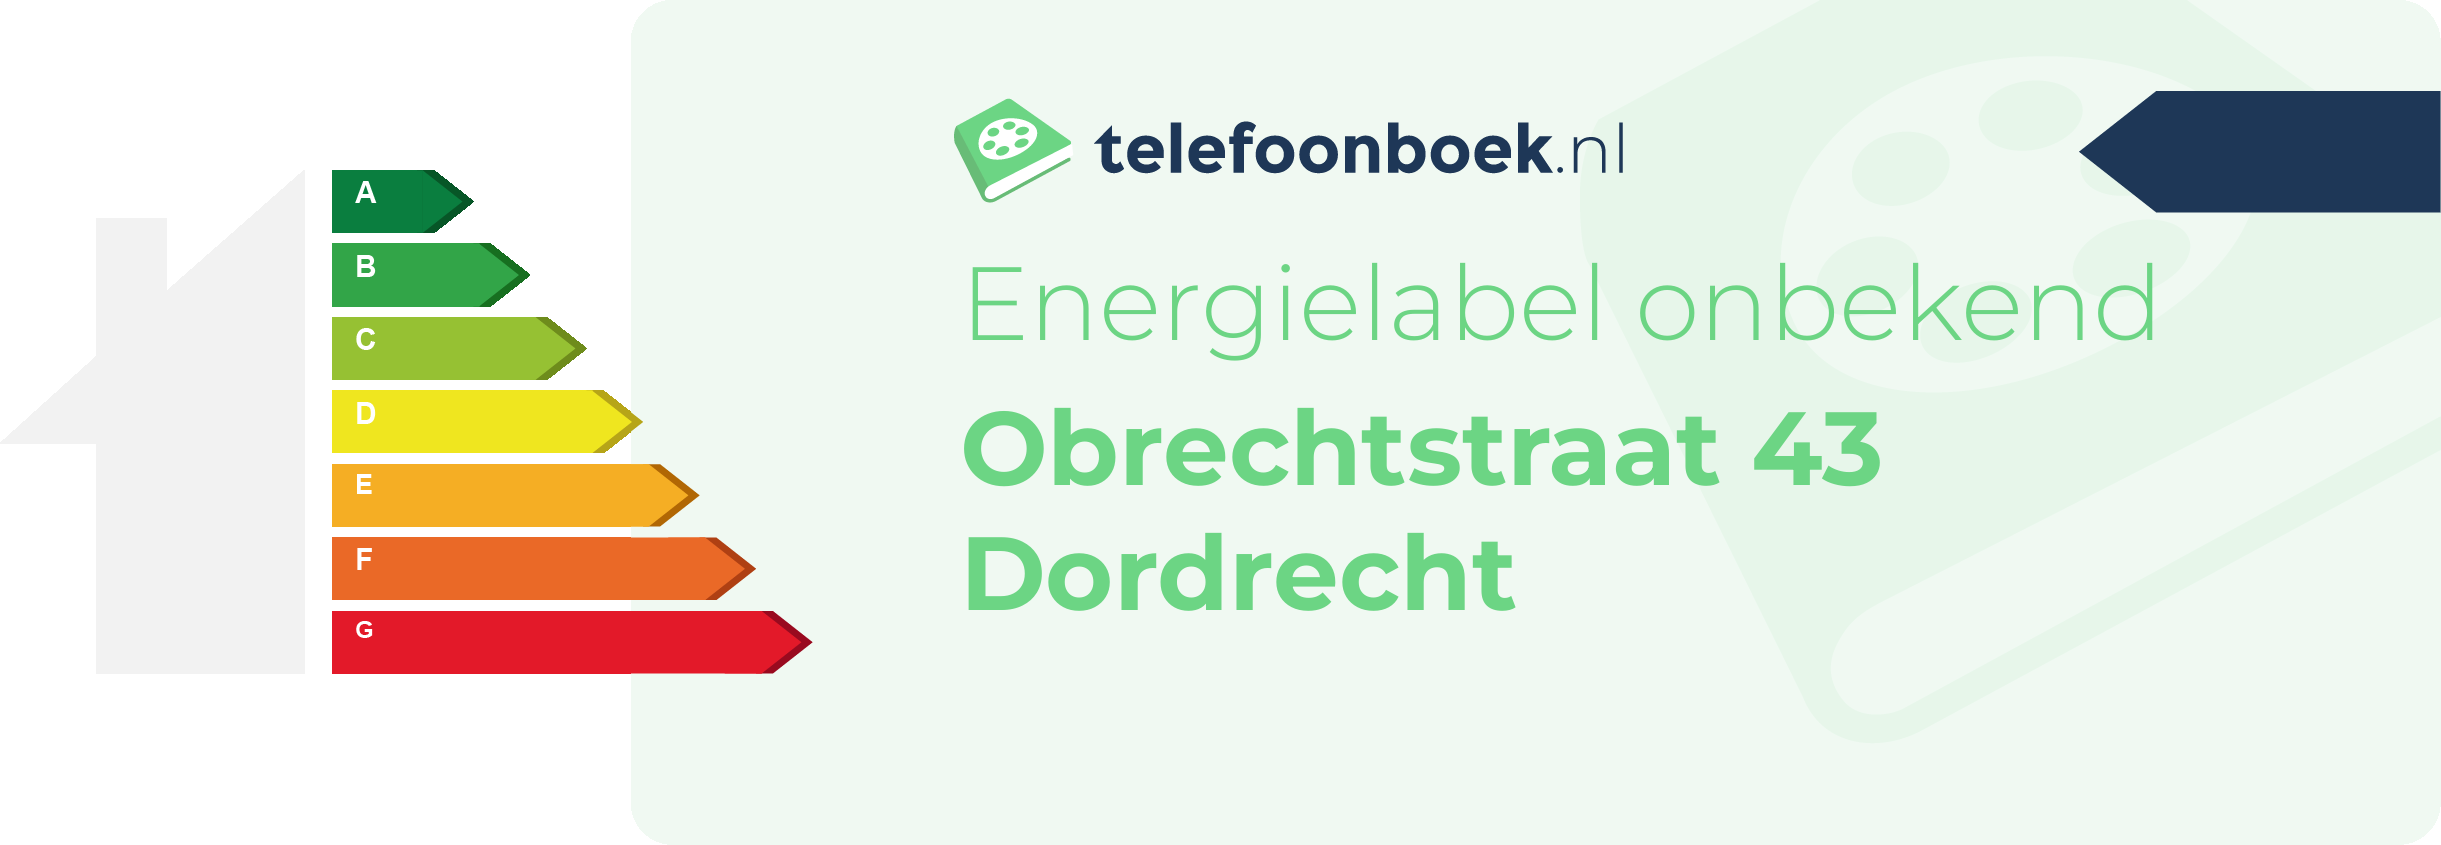 Energielabel Obrechtstraat 43 Dordrecht